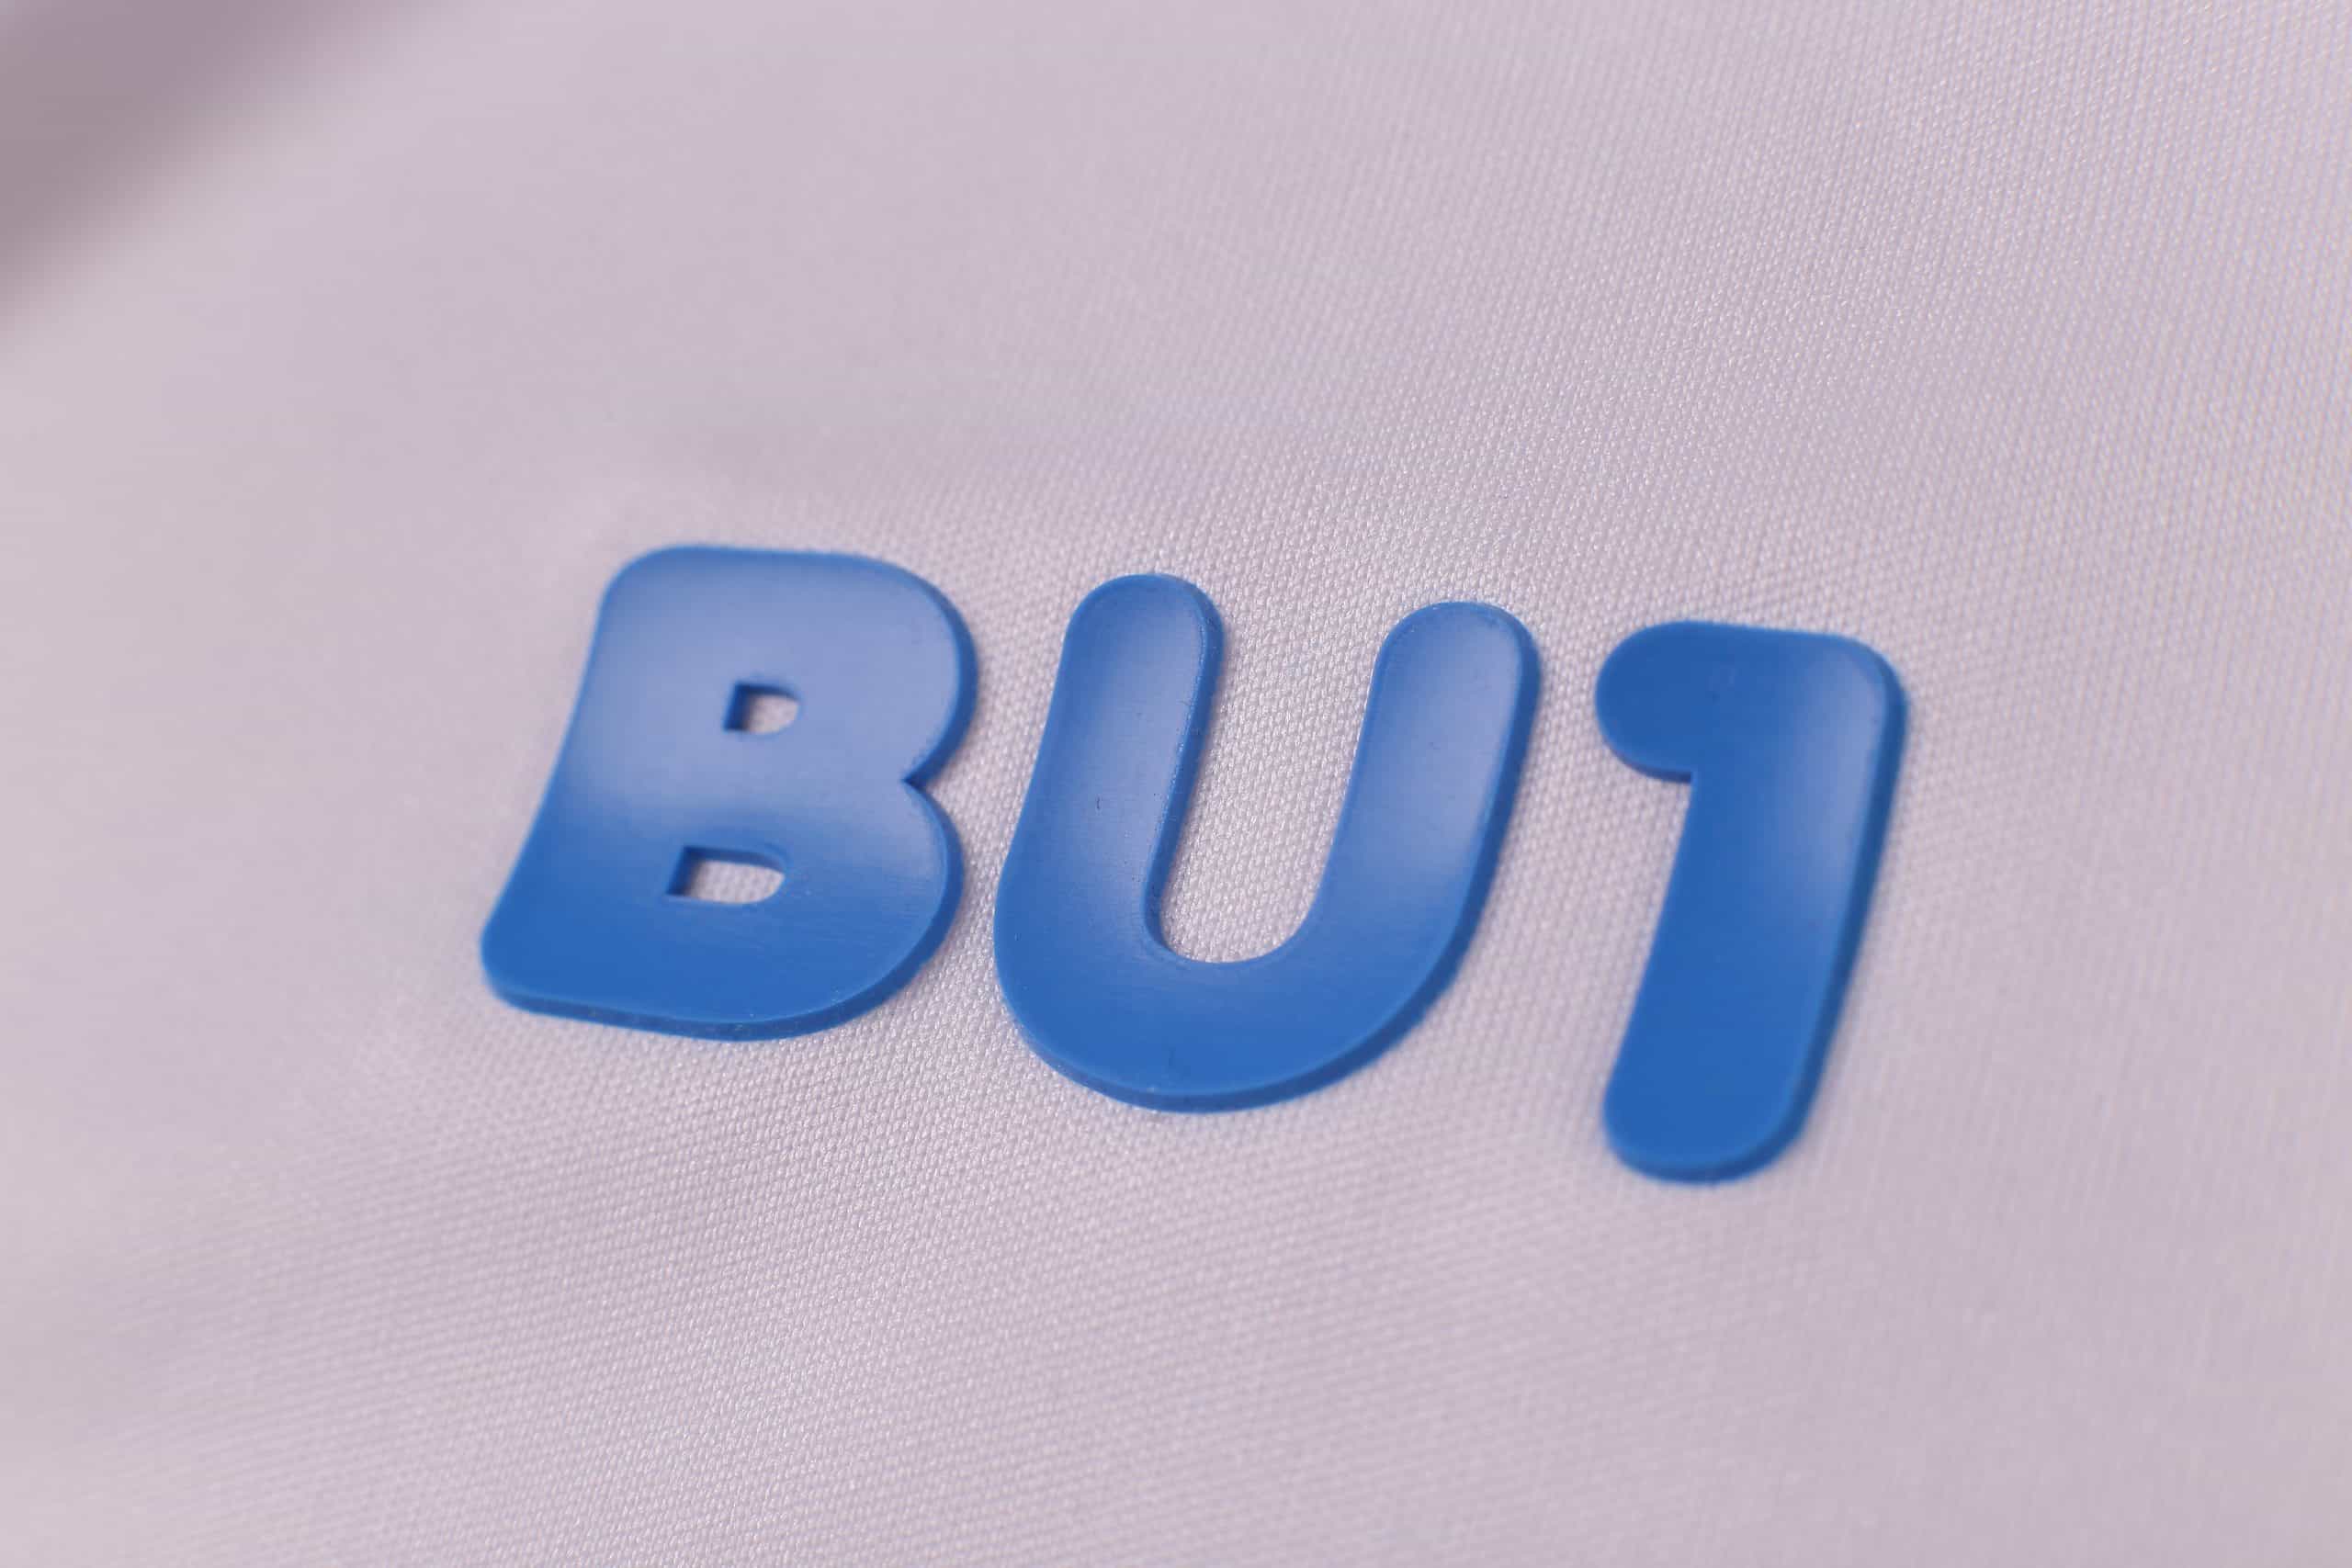 Koszulka BU1 20 biała